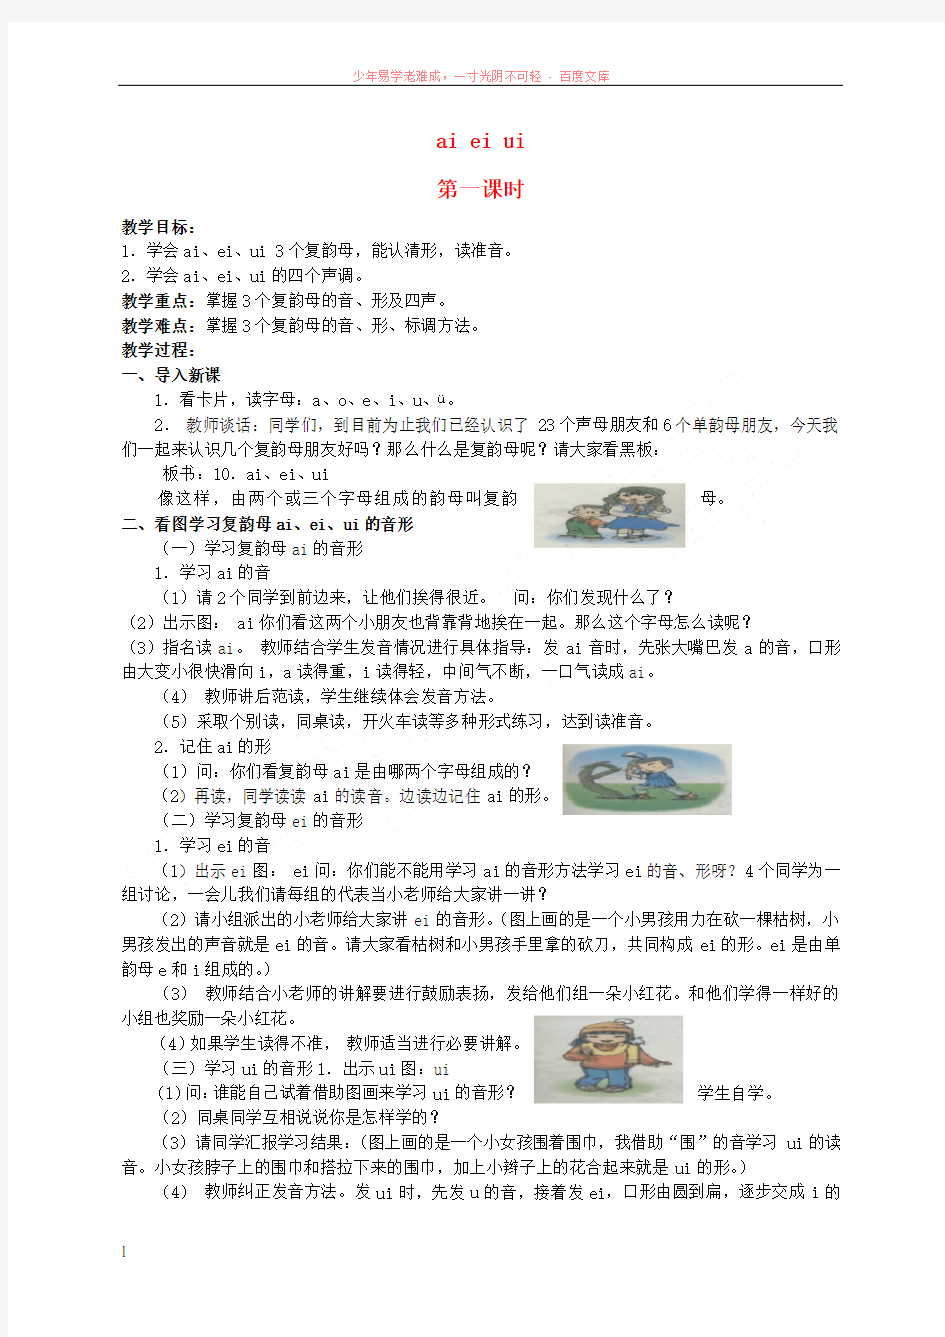 一年级语文上册aieiui教案北京版